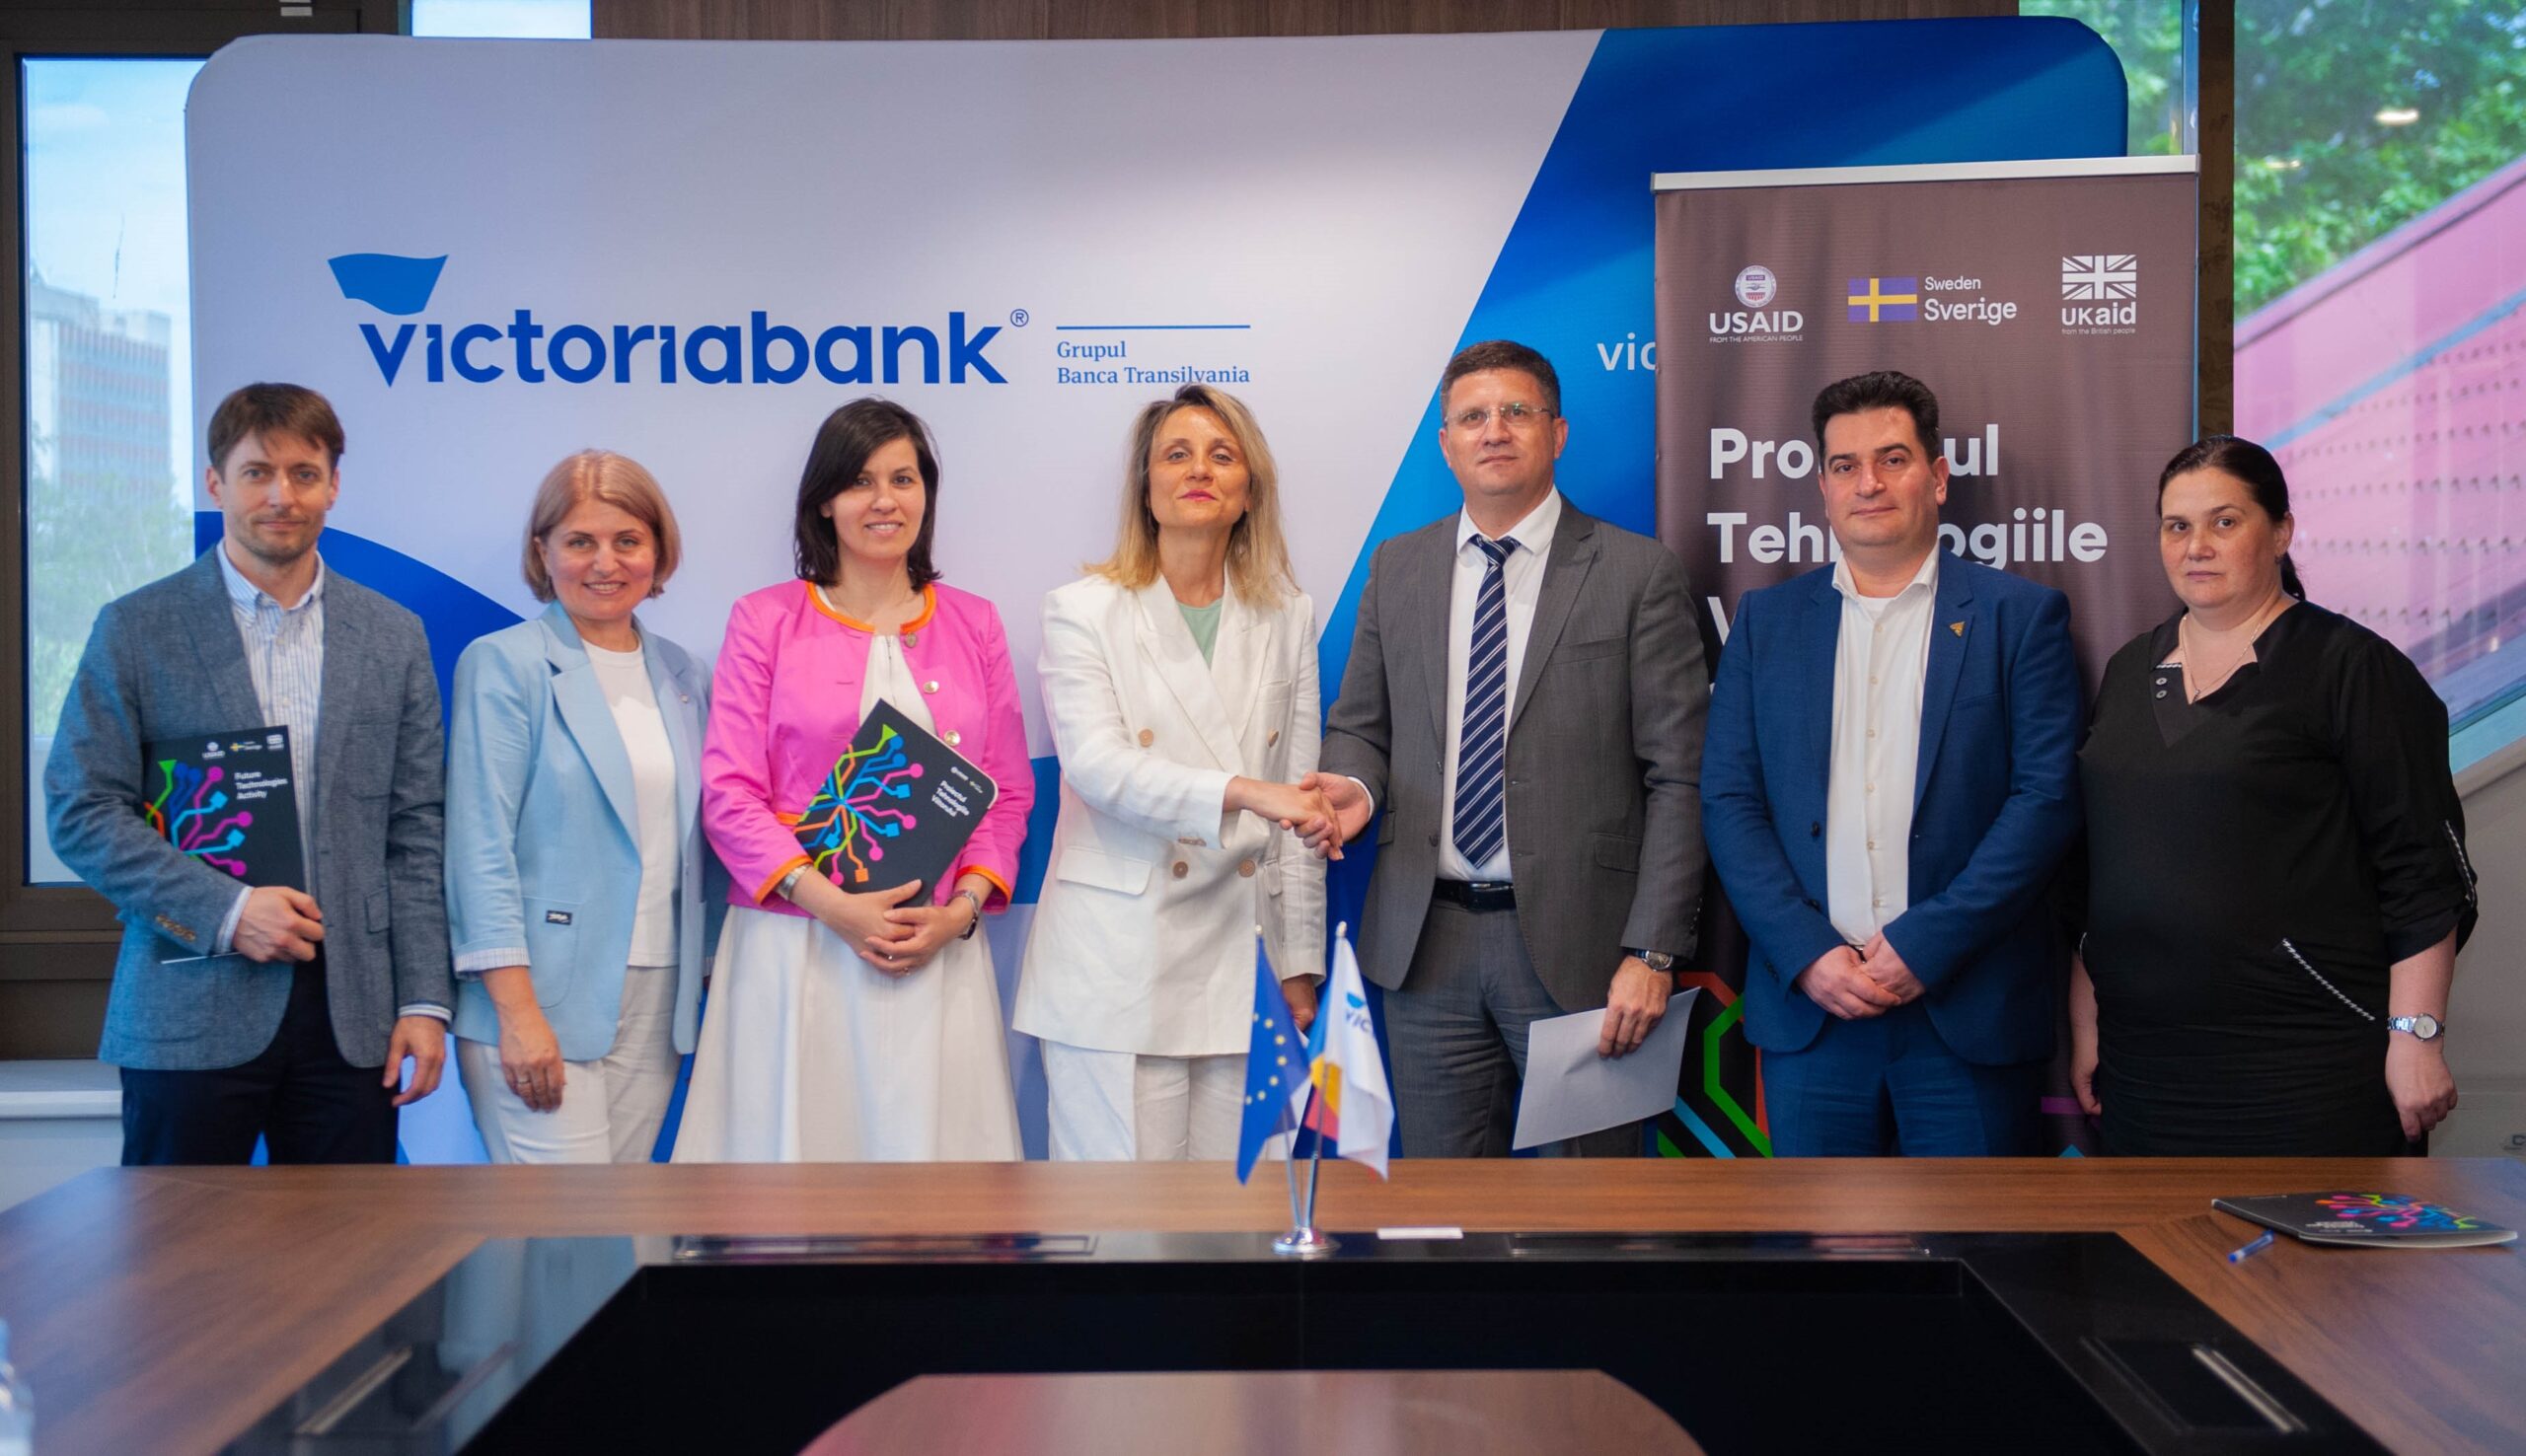 Victoriabank și Proiectul Tehnologiile Viitorului în Moldova au încheiat un Acord de Parteneriat pentru a dinamiza procesul de digitalizare a IMM-urilor din Republica Moldova